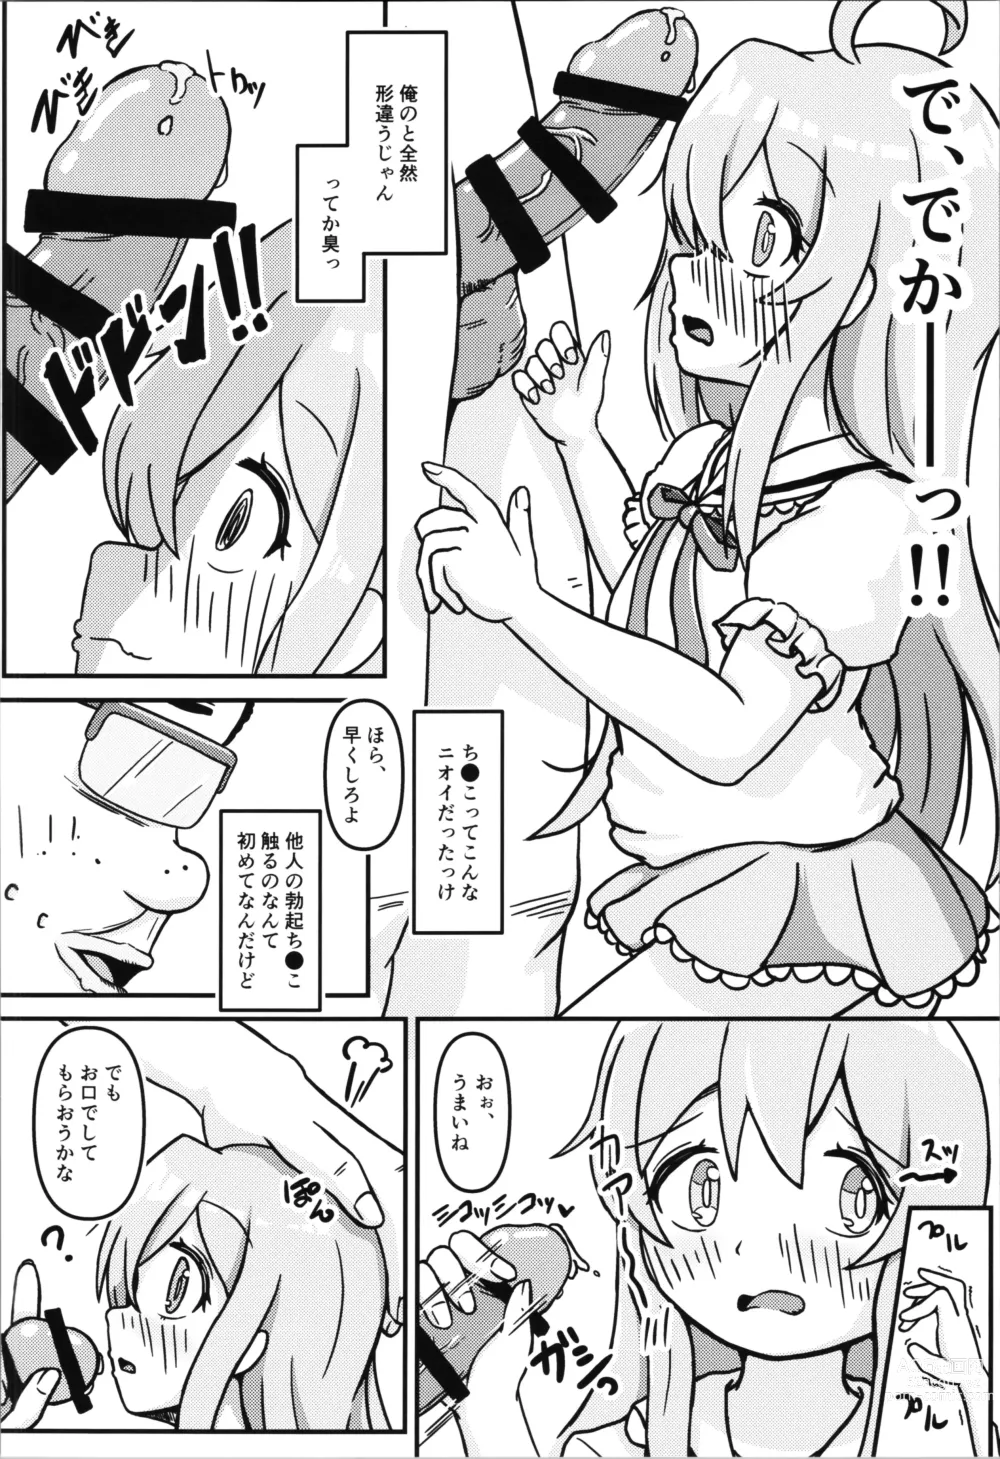 Page 16 of doujinshi Mahiro-chans bouncy ××× experience